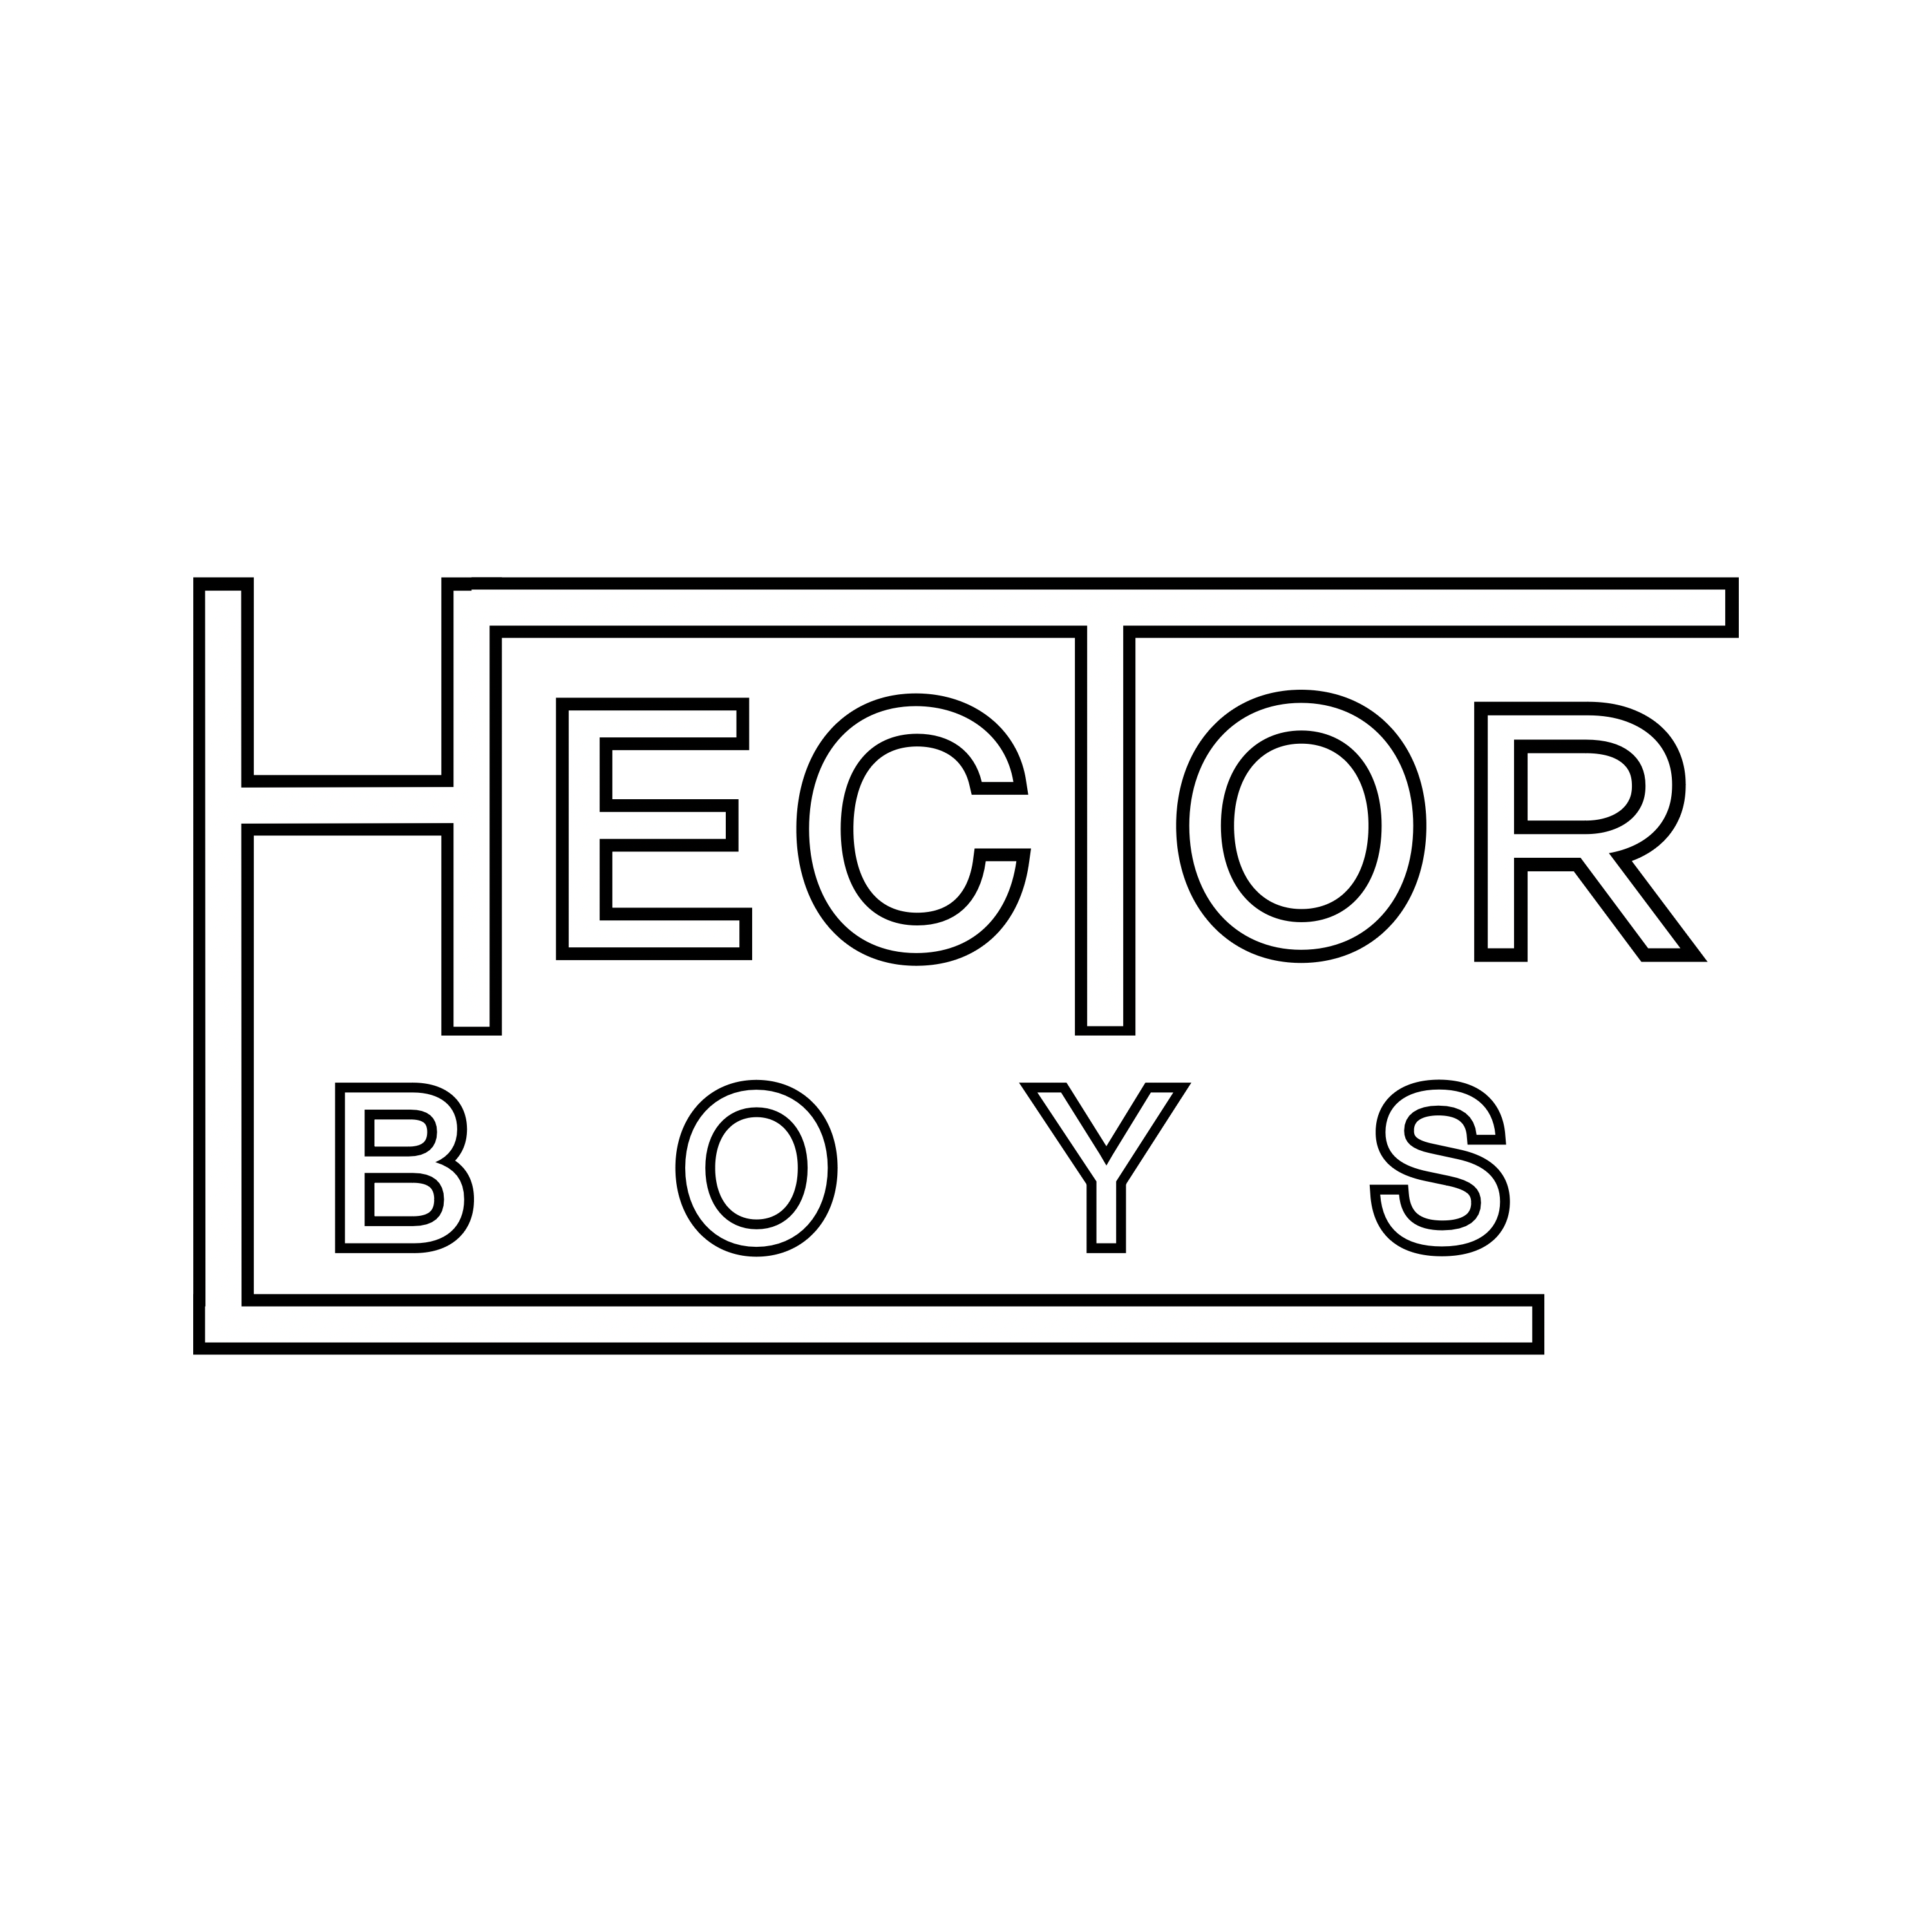 Hector Boys